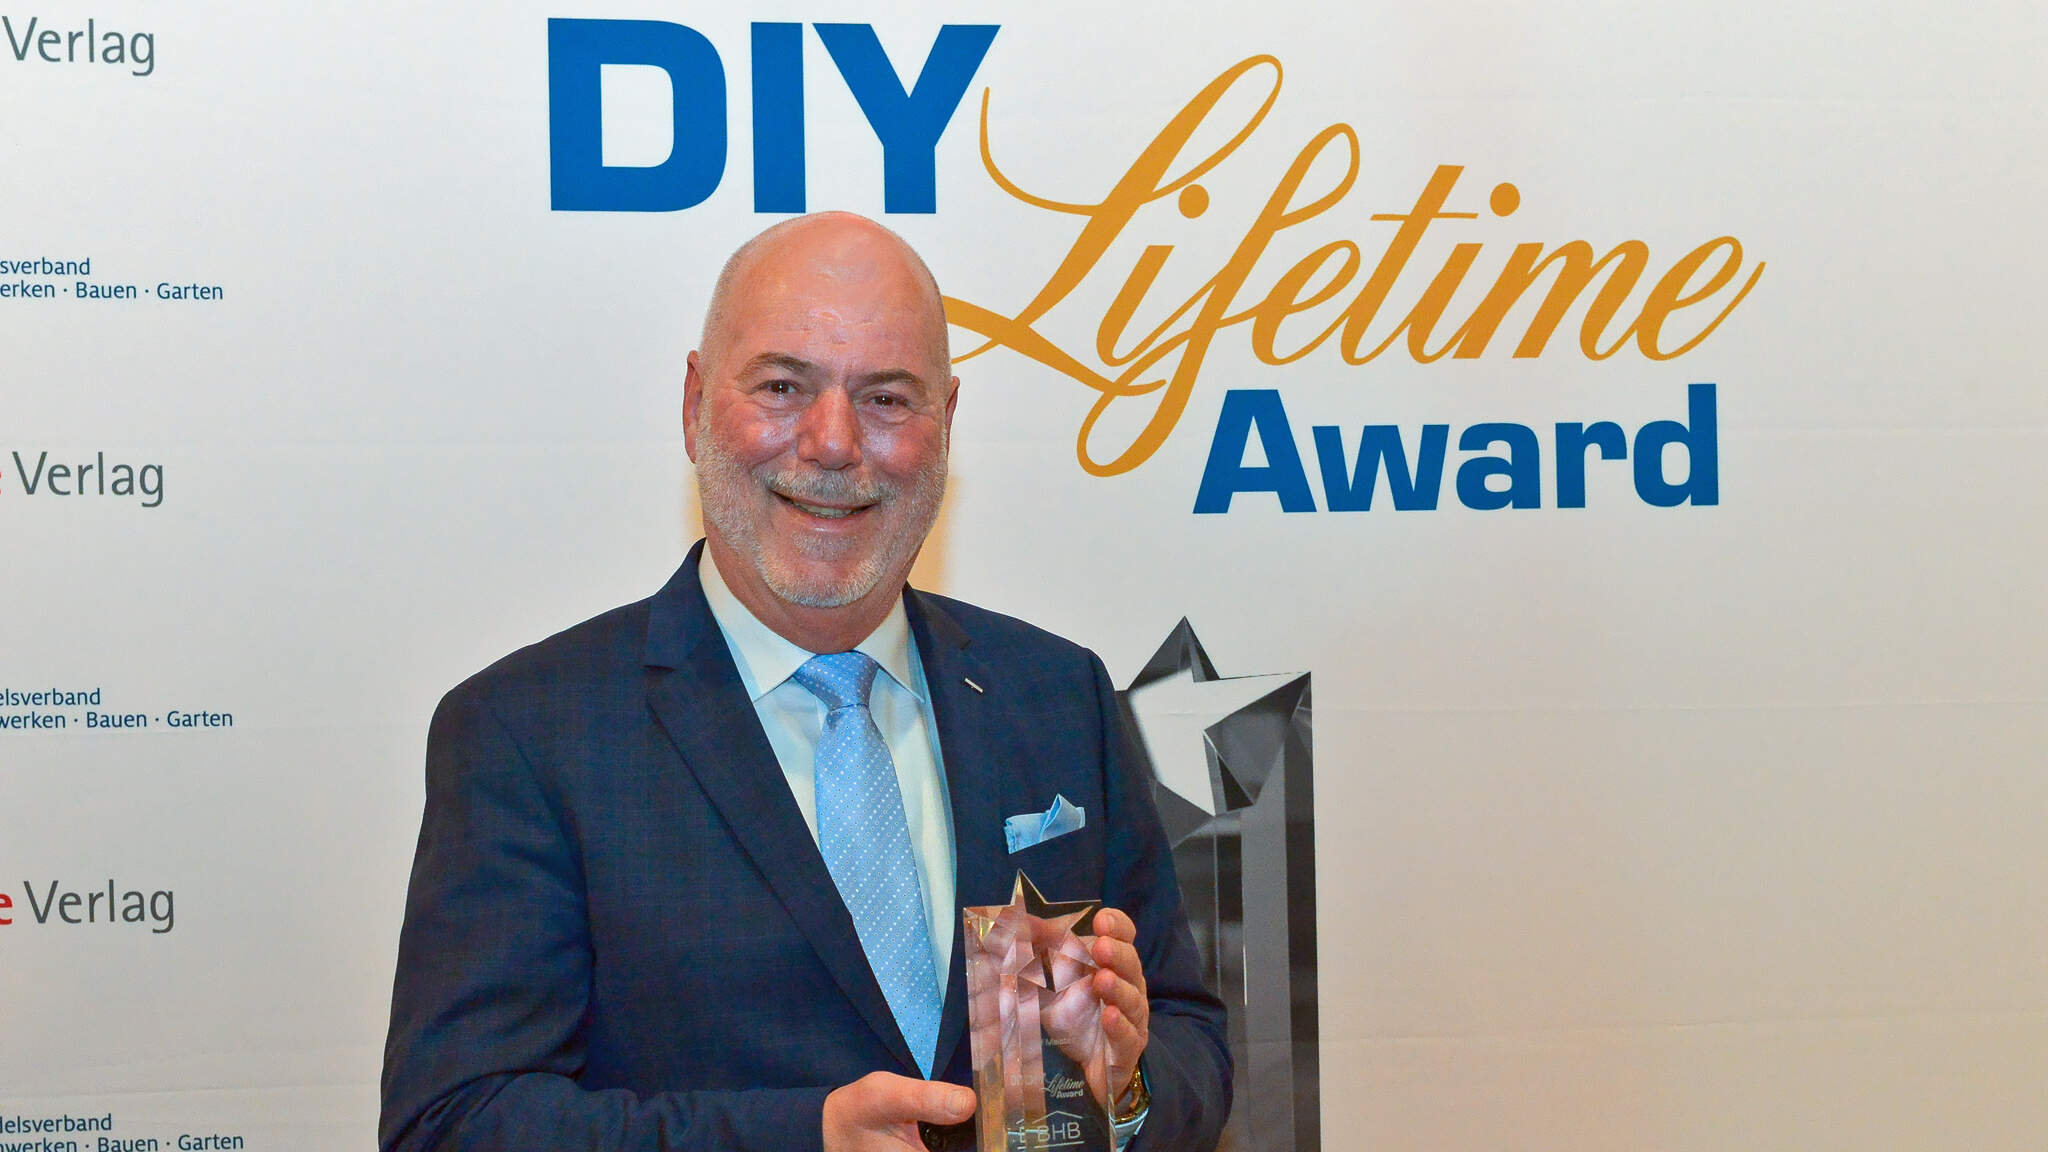 Ralf Meistes a reçu le DIY Lifetime Award 2019 </span>